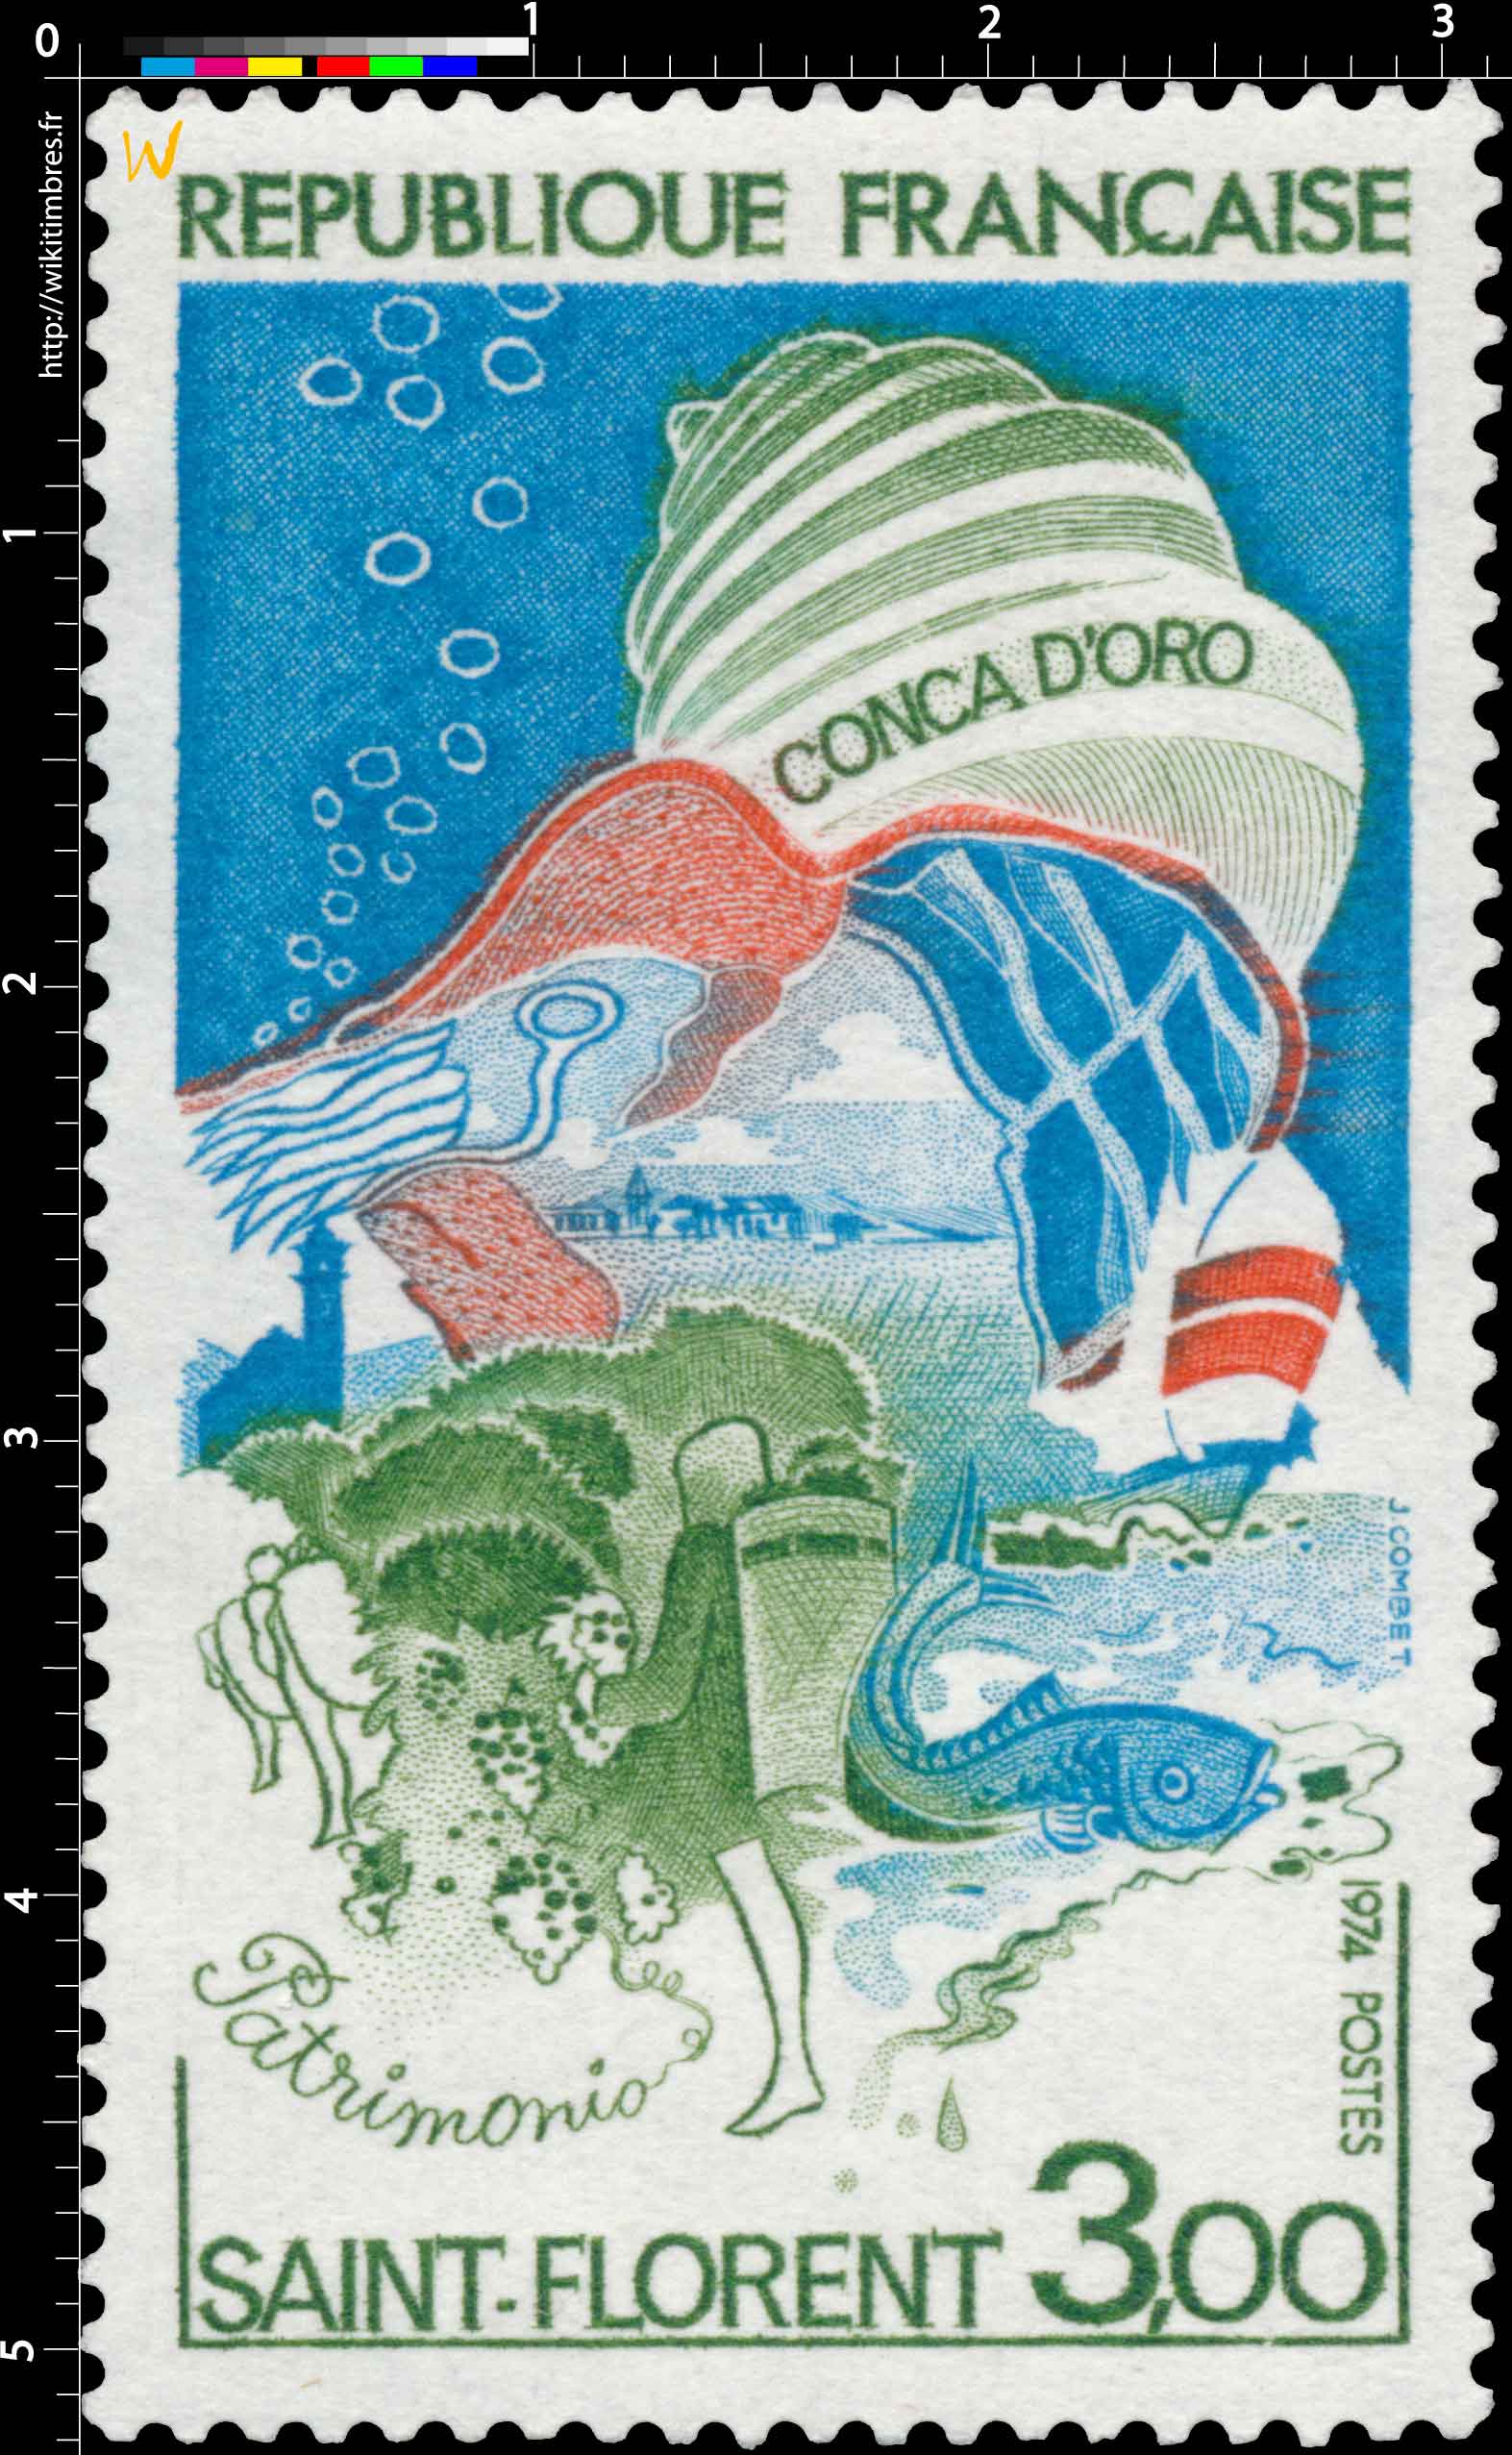 1974 SAINT-FLORENT CONCA D'ORO Patrimonio